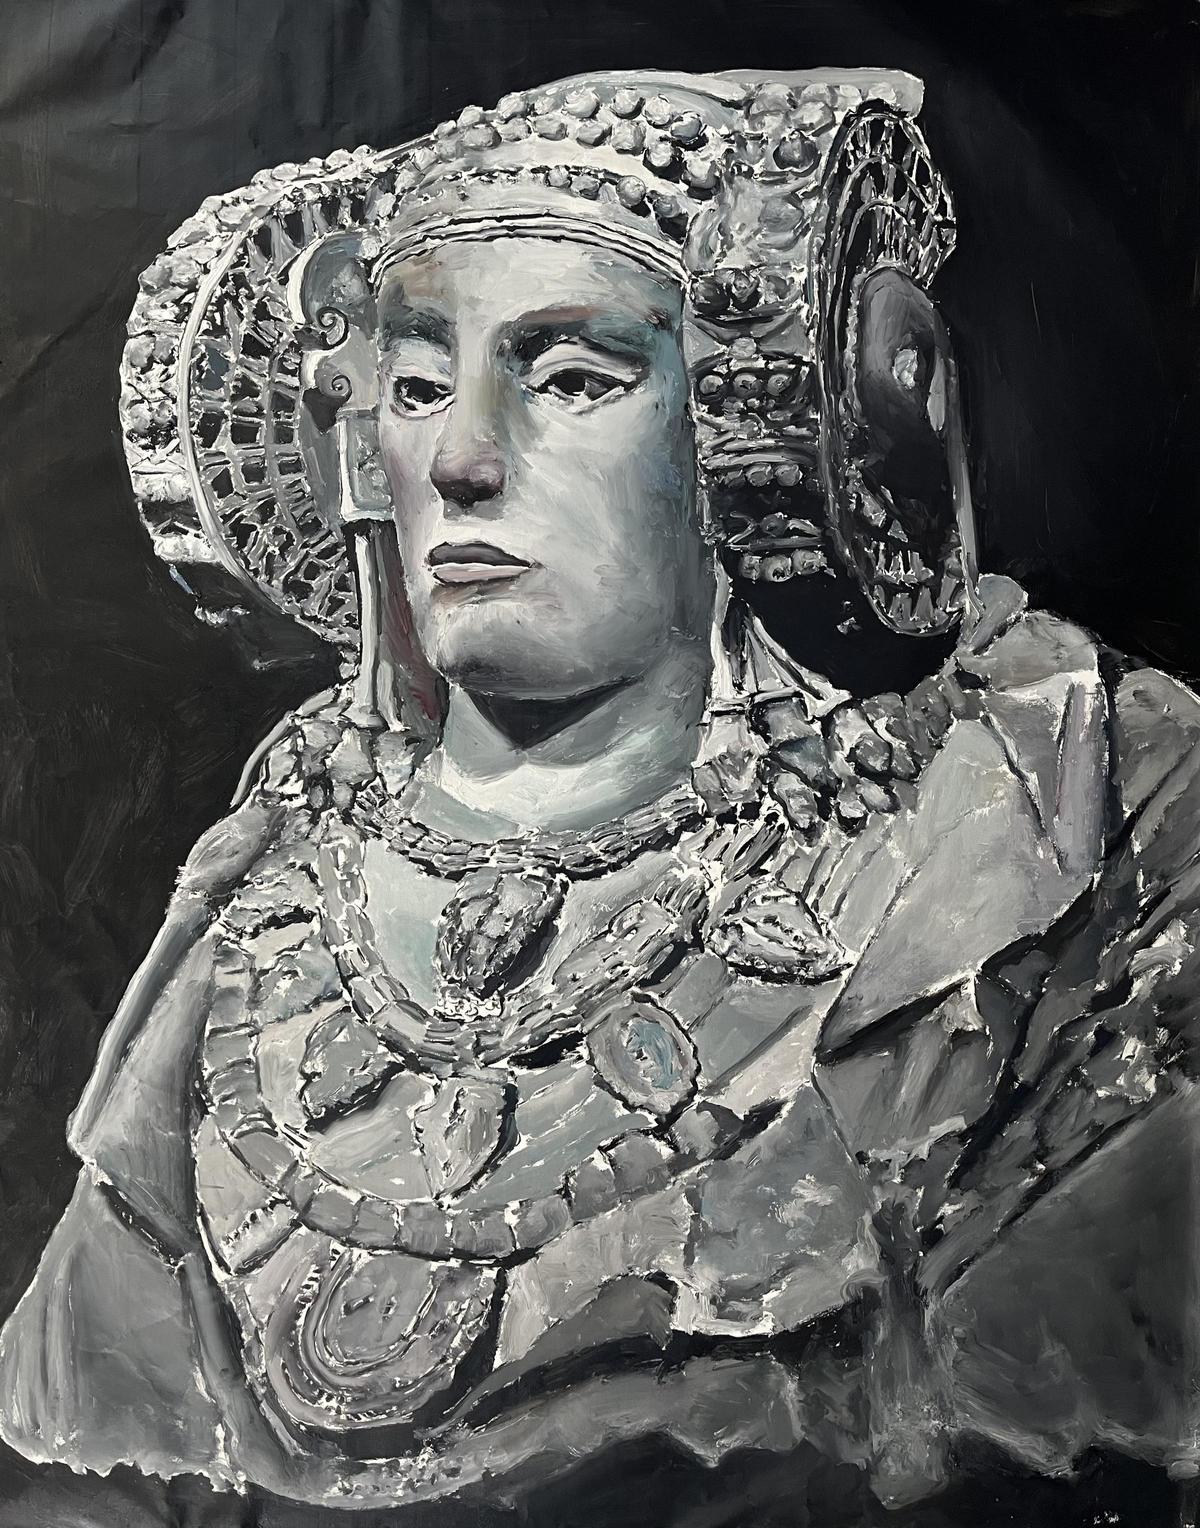 Imagen completa de la Dama de Elche de Santiago Ydáñez